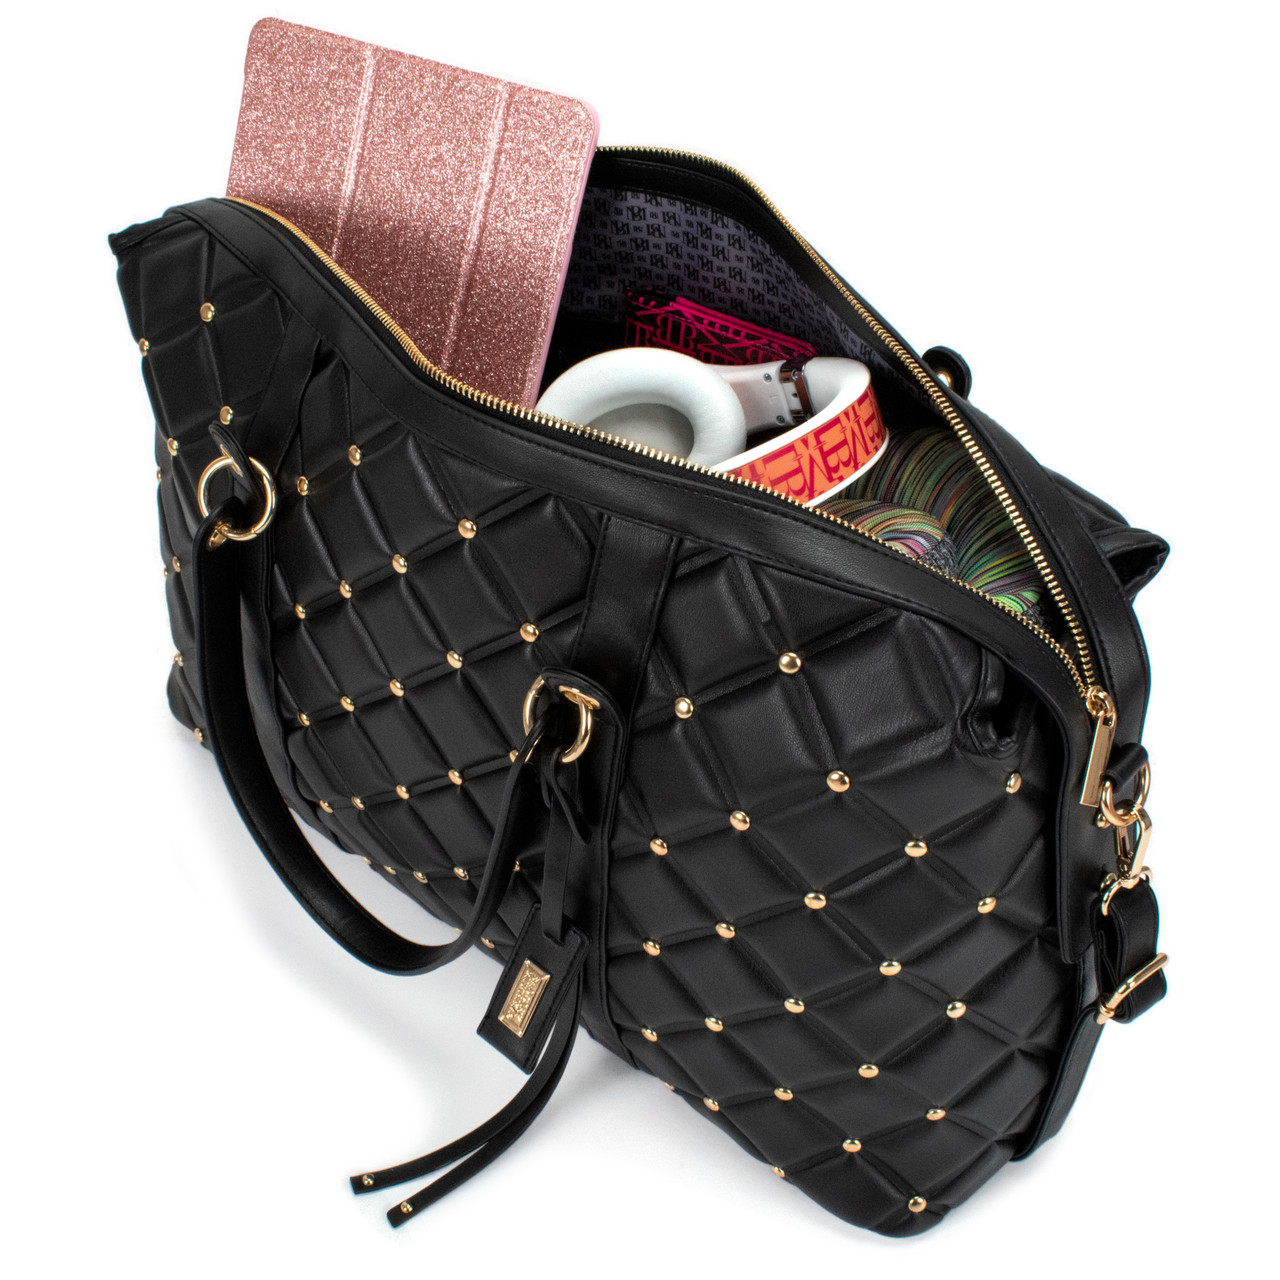 BADGLEY MISCHKA Quilted Vegan Leather Weekender Tote Bag (Black